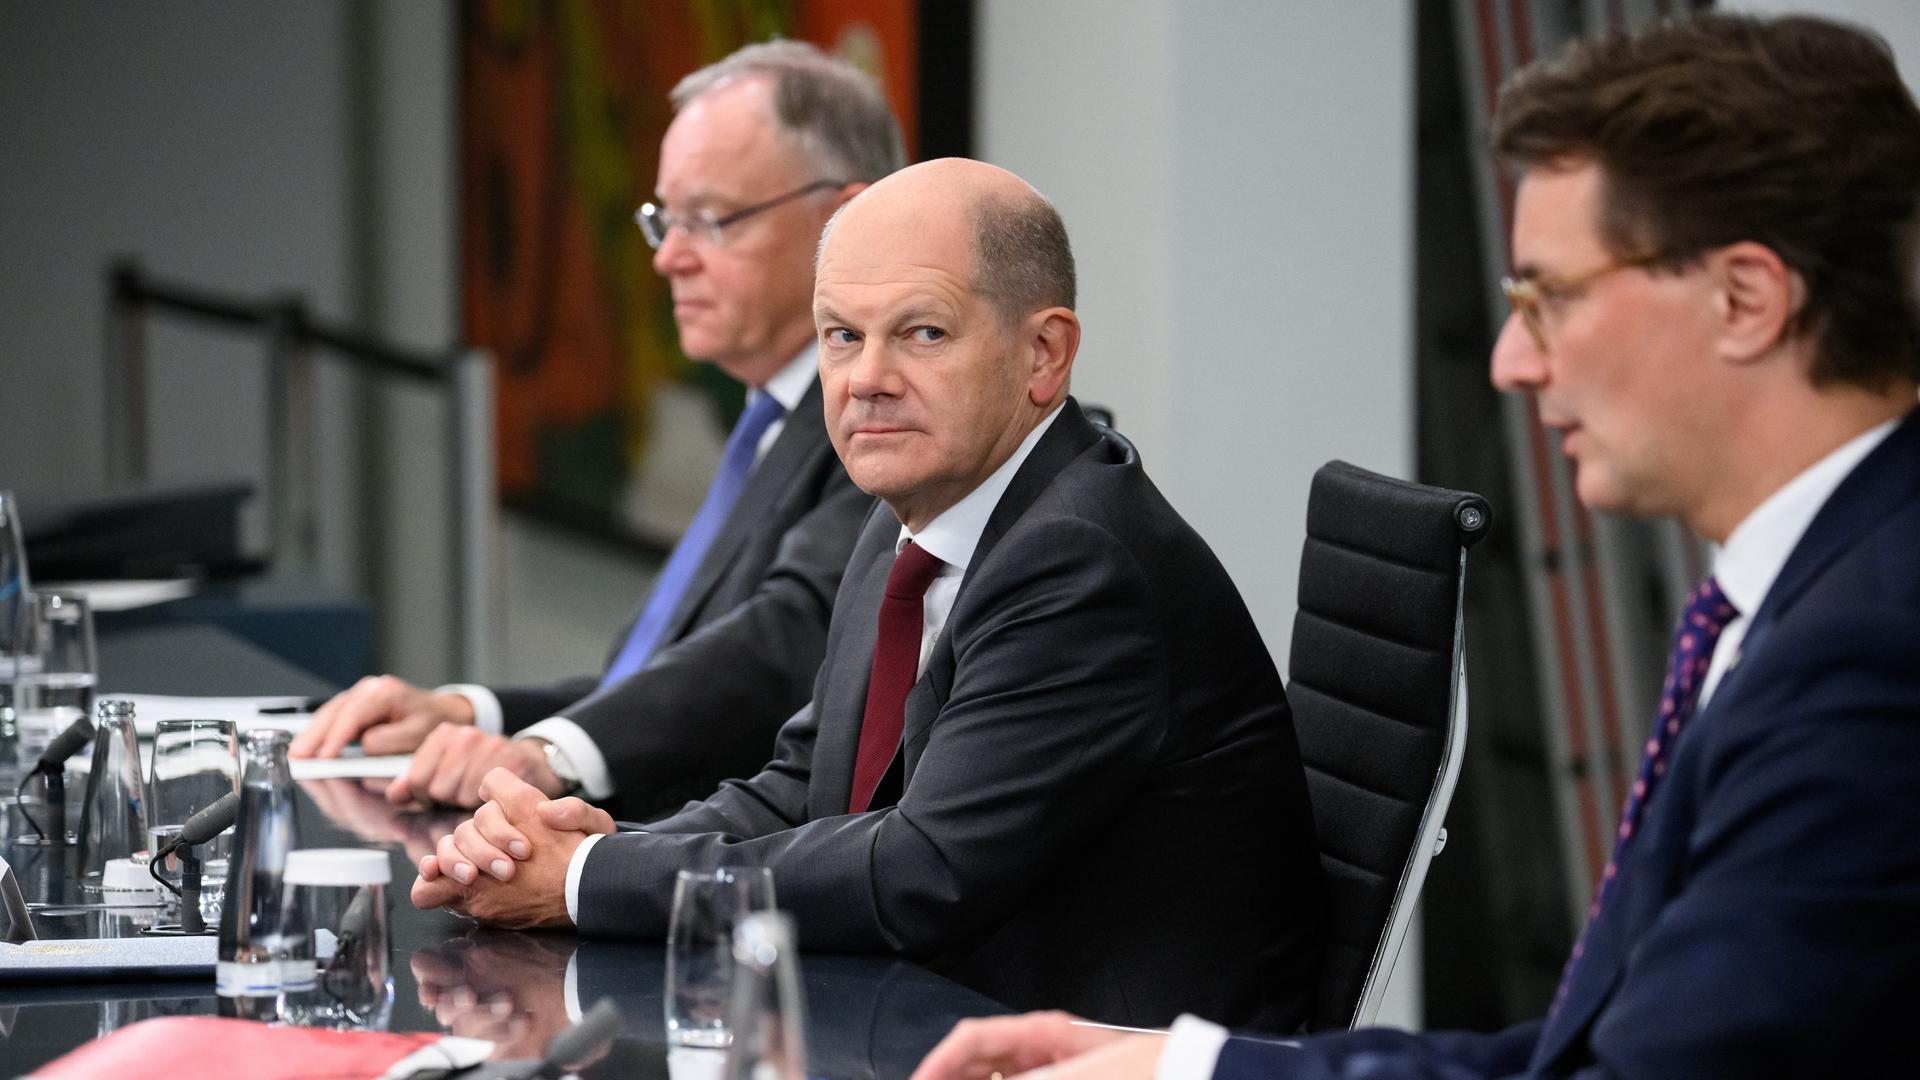 Bundeskanzler Olaf Scholz, platziert links neben Niedersachsens Ministerpräsident Stephan Weil, wirft einen kritischen Blick zum links neben ihm sitzenden NRW-Ministerpräsidenten Hendrik Wüst.